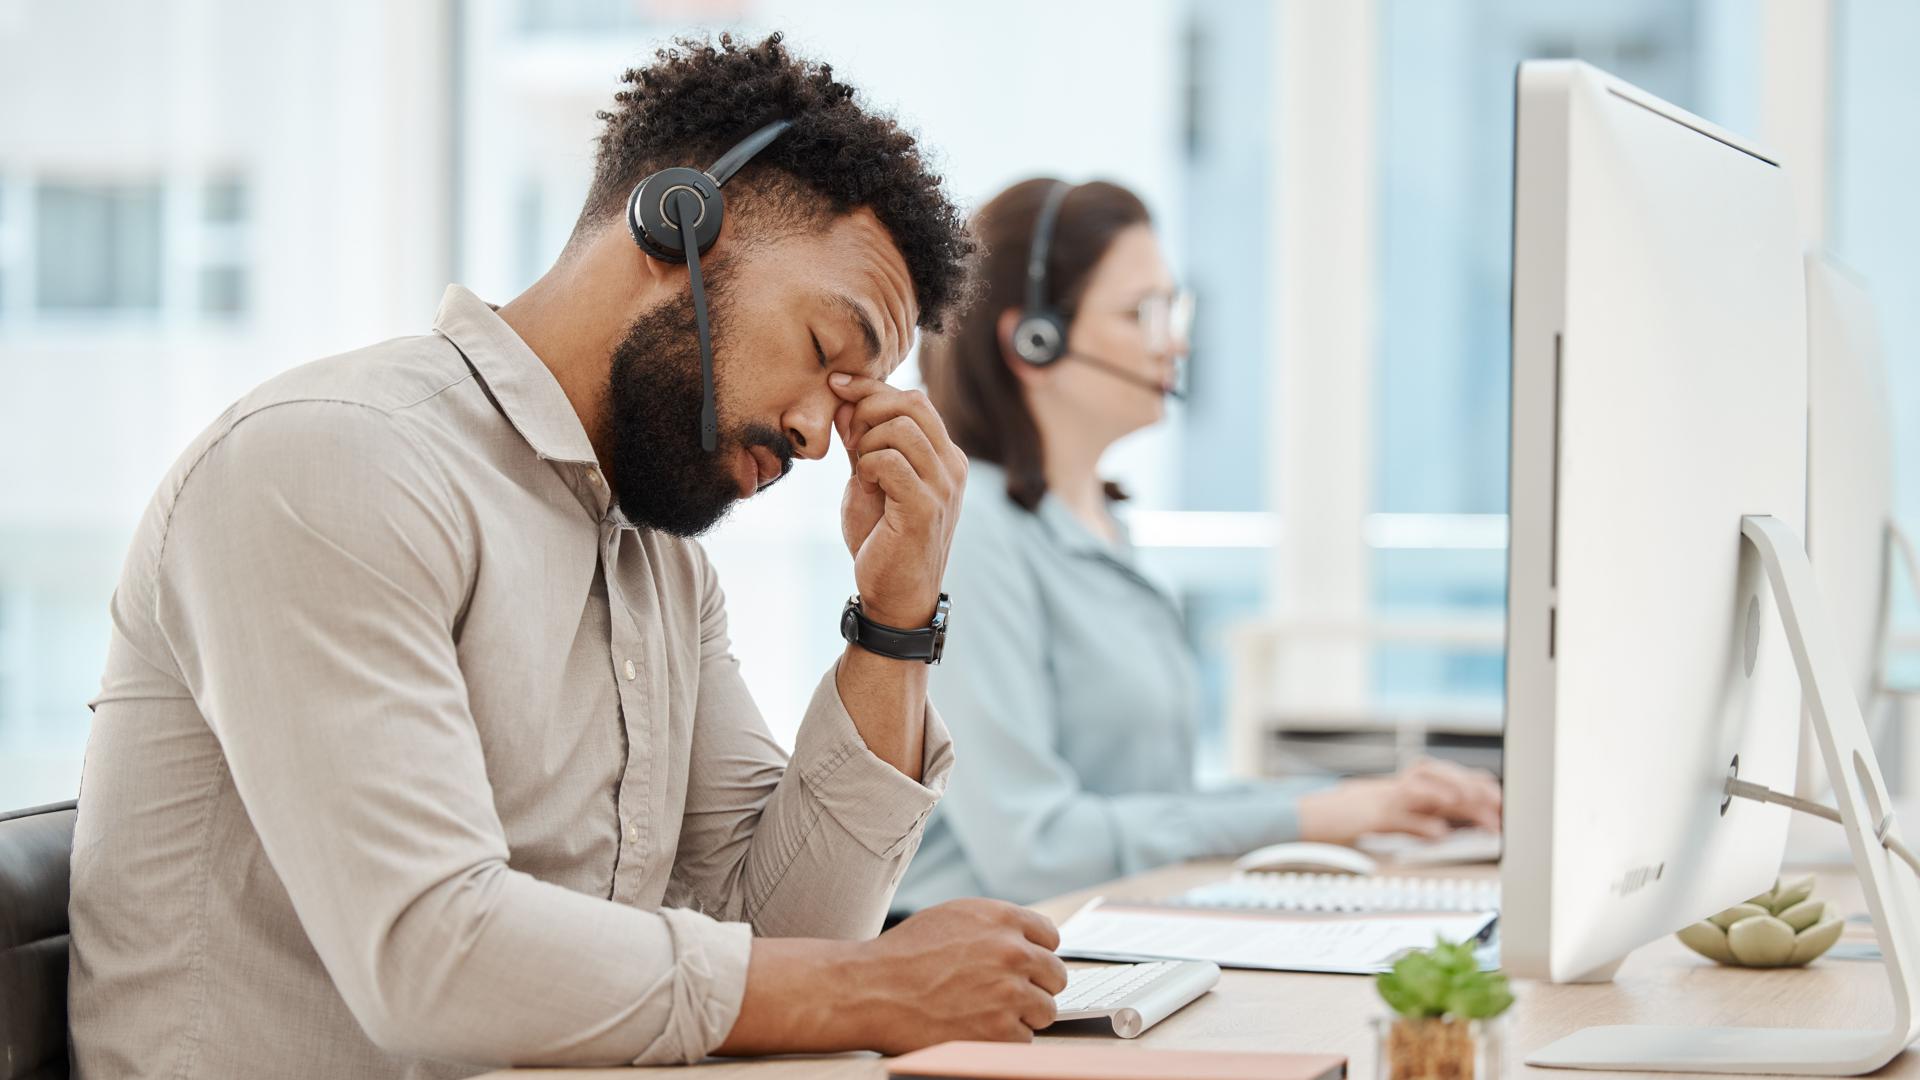 Ein Mitarbeiter im Call-Center sitzt offensichtlich müde und gestresst vor dem Computer. Er hat die Augen geschlossen, den Kopf hält er gesenkt und massiert sich mit den Fingern die Nase-Stirn-Partie.